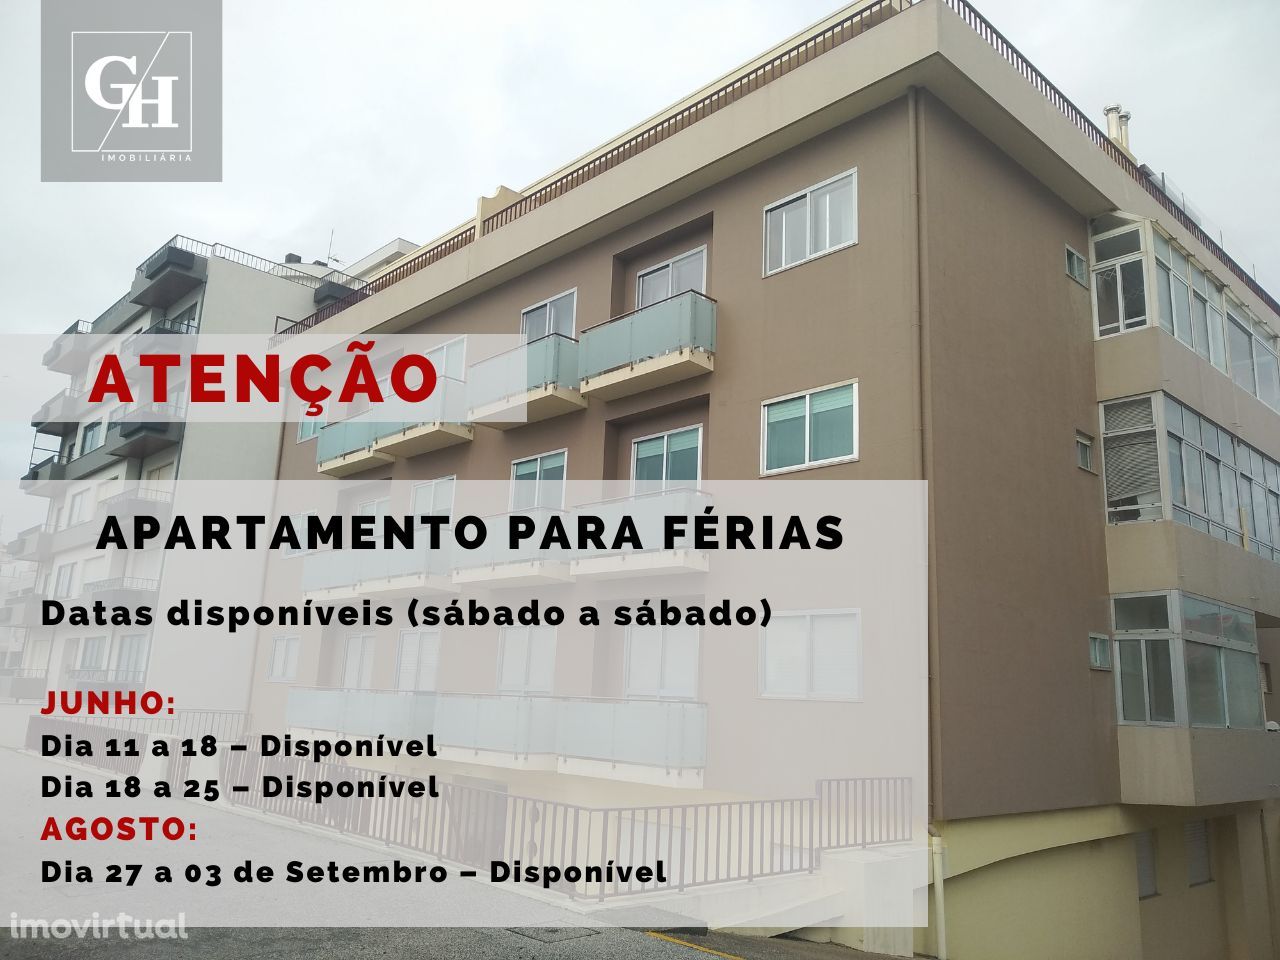 FÉRIAS/SEMANA - Apartamento T2 – Av. do Brasil, Vila do Conde